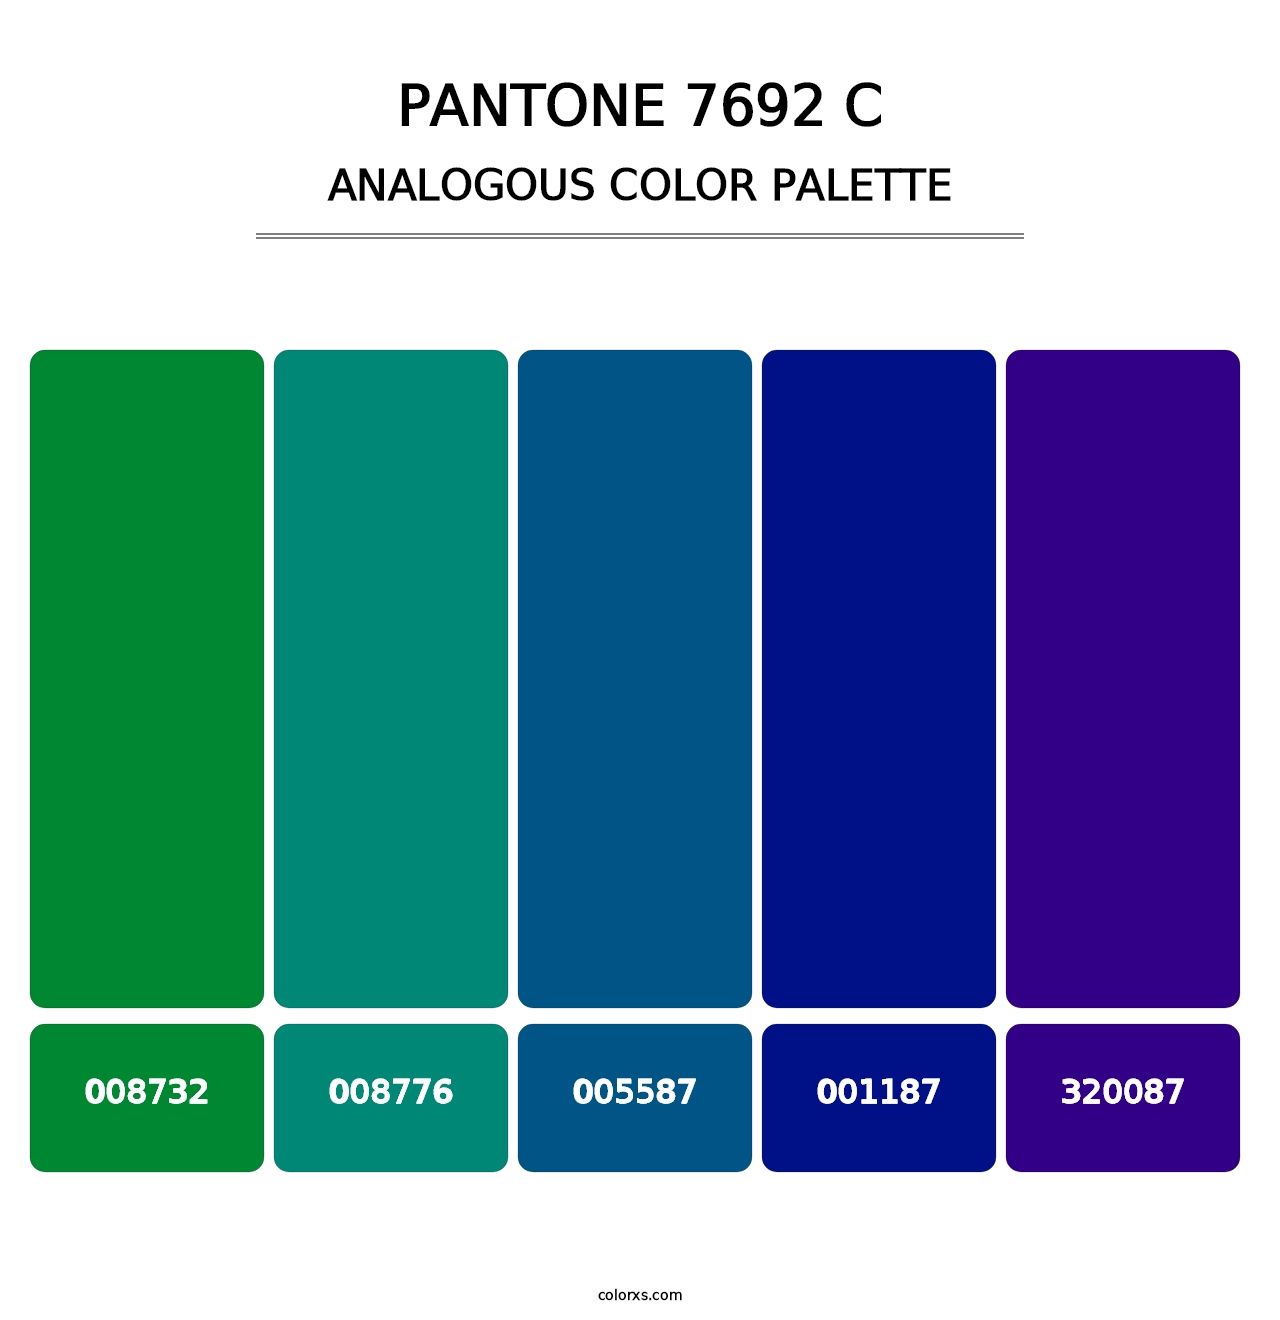 PANTONE 7692 C - Analogous Color Palette